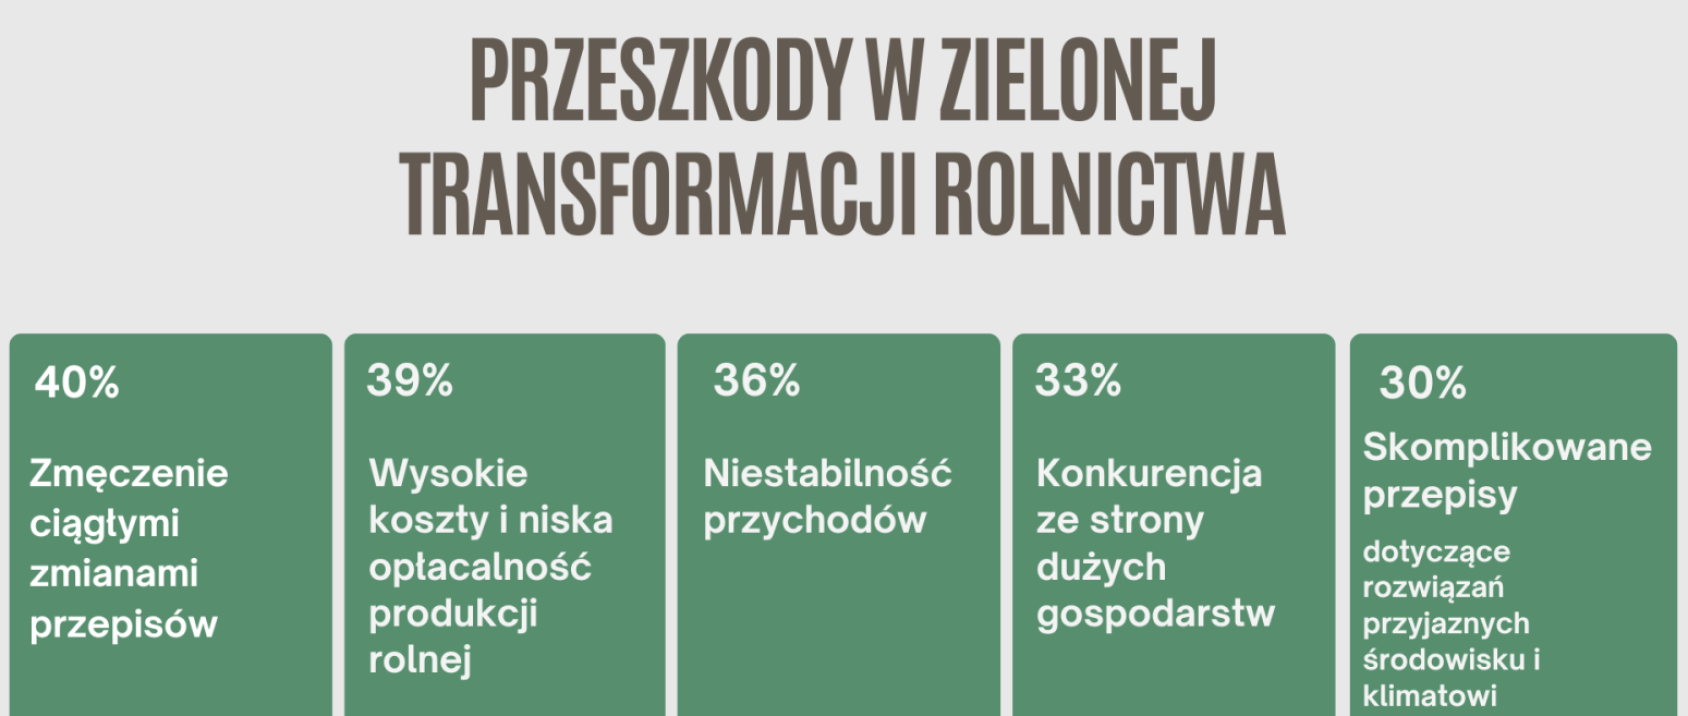 Zielona transformacja polskiego rolnictwa. Gdzie jesteśmy? Co dalej?